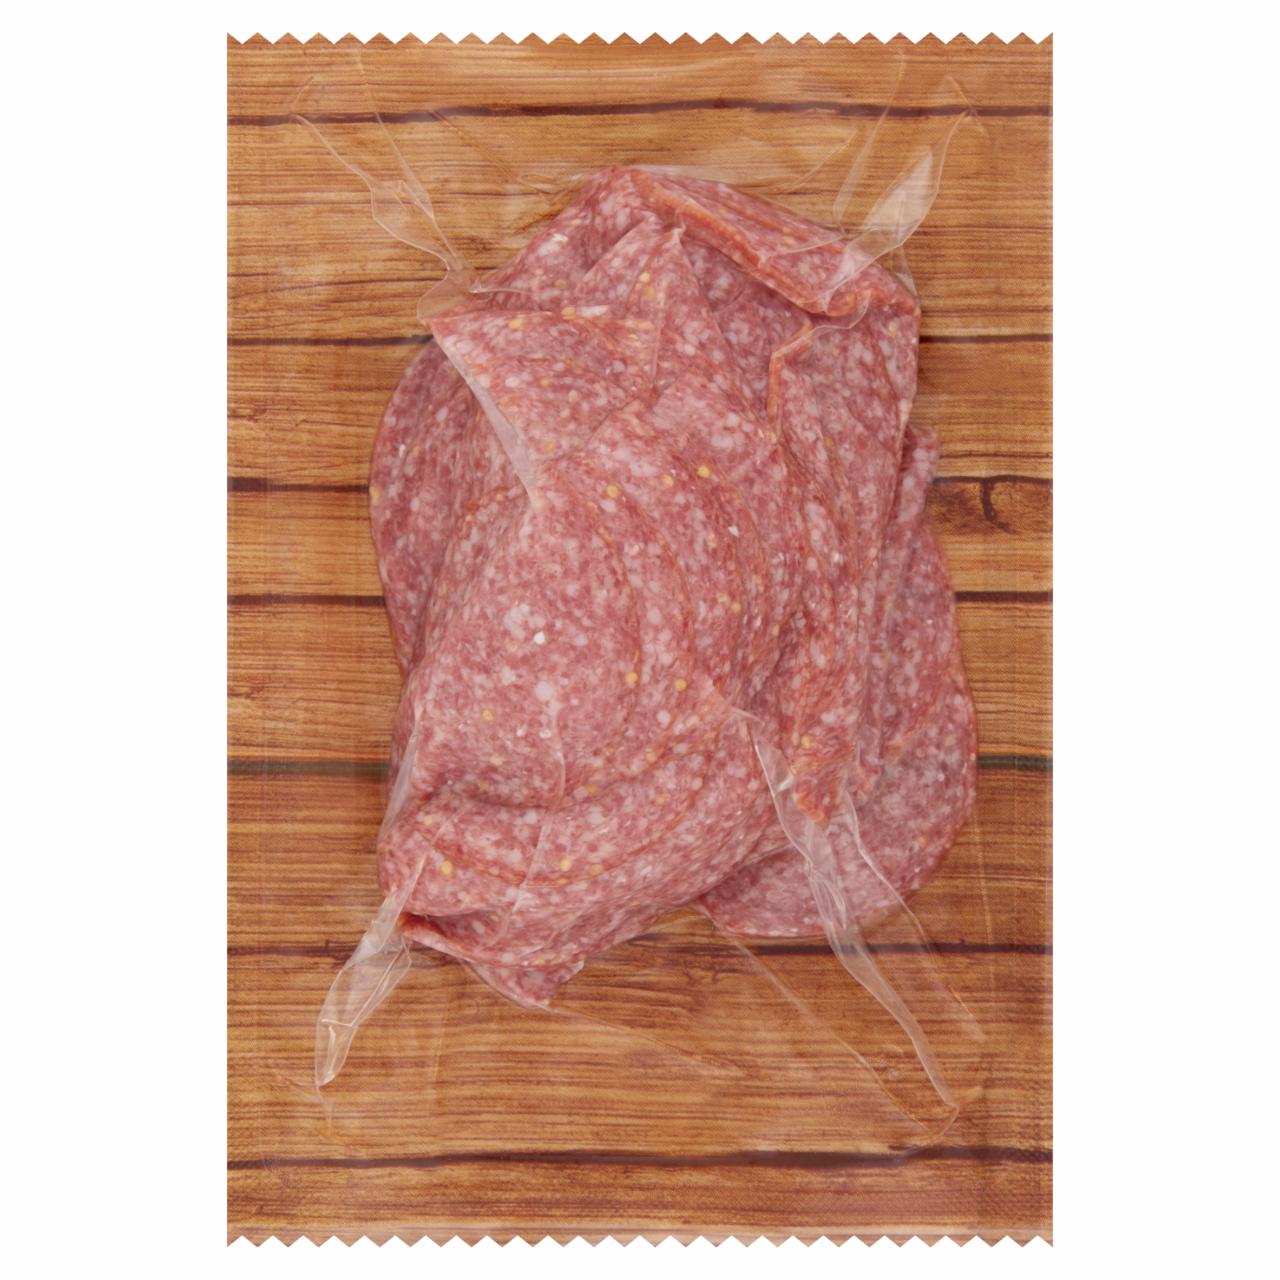 Képek - Kamarko szeletelt húskészítmény sertéshúsból 200 g